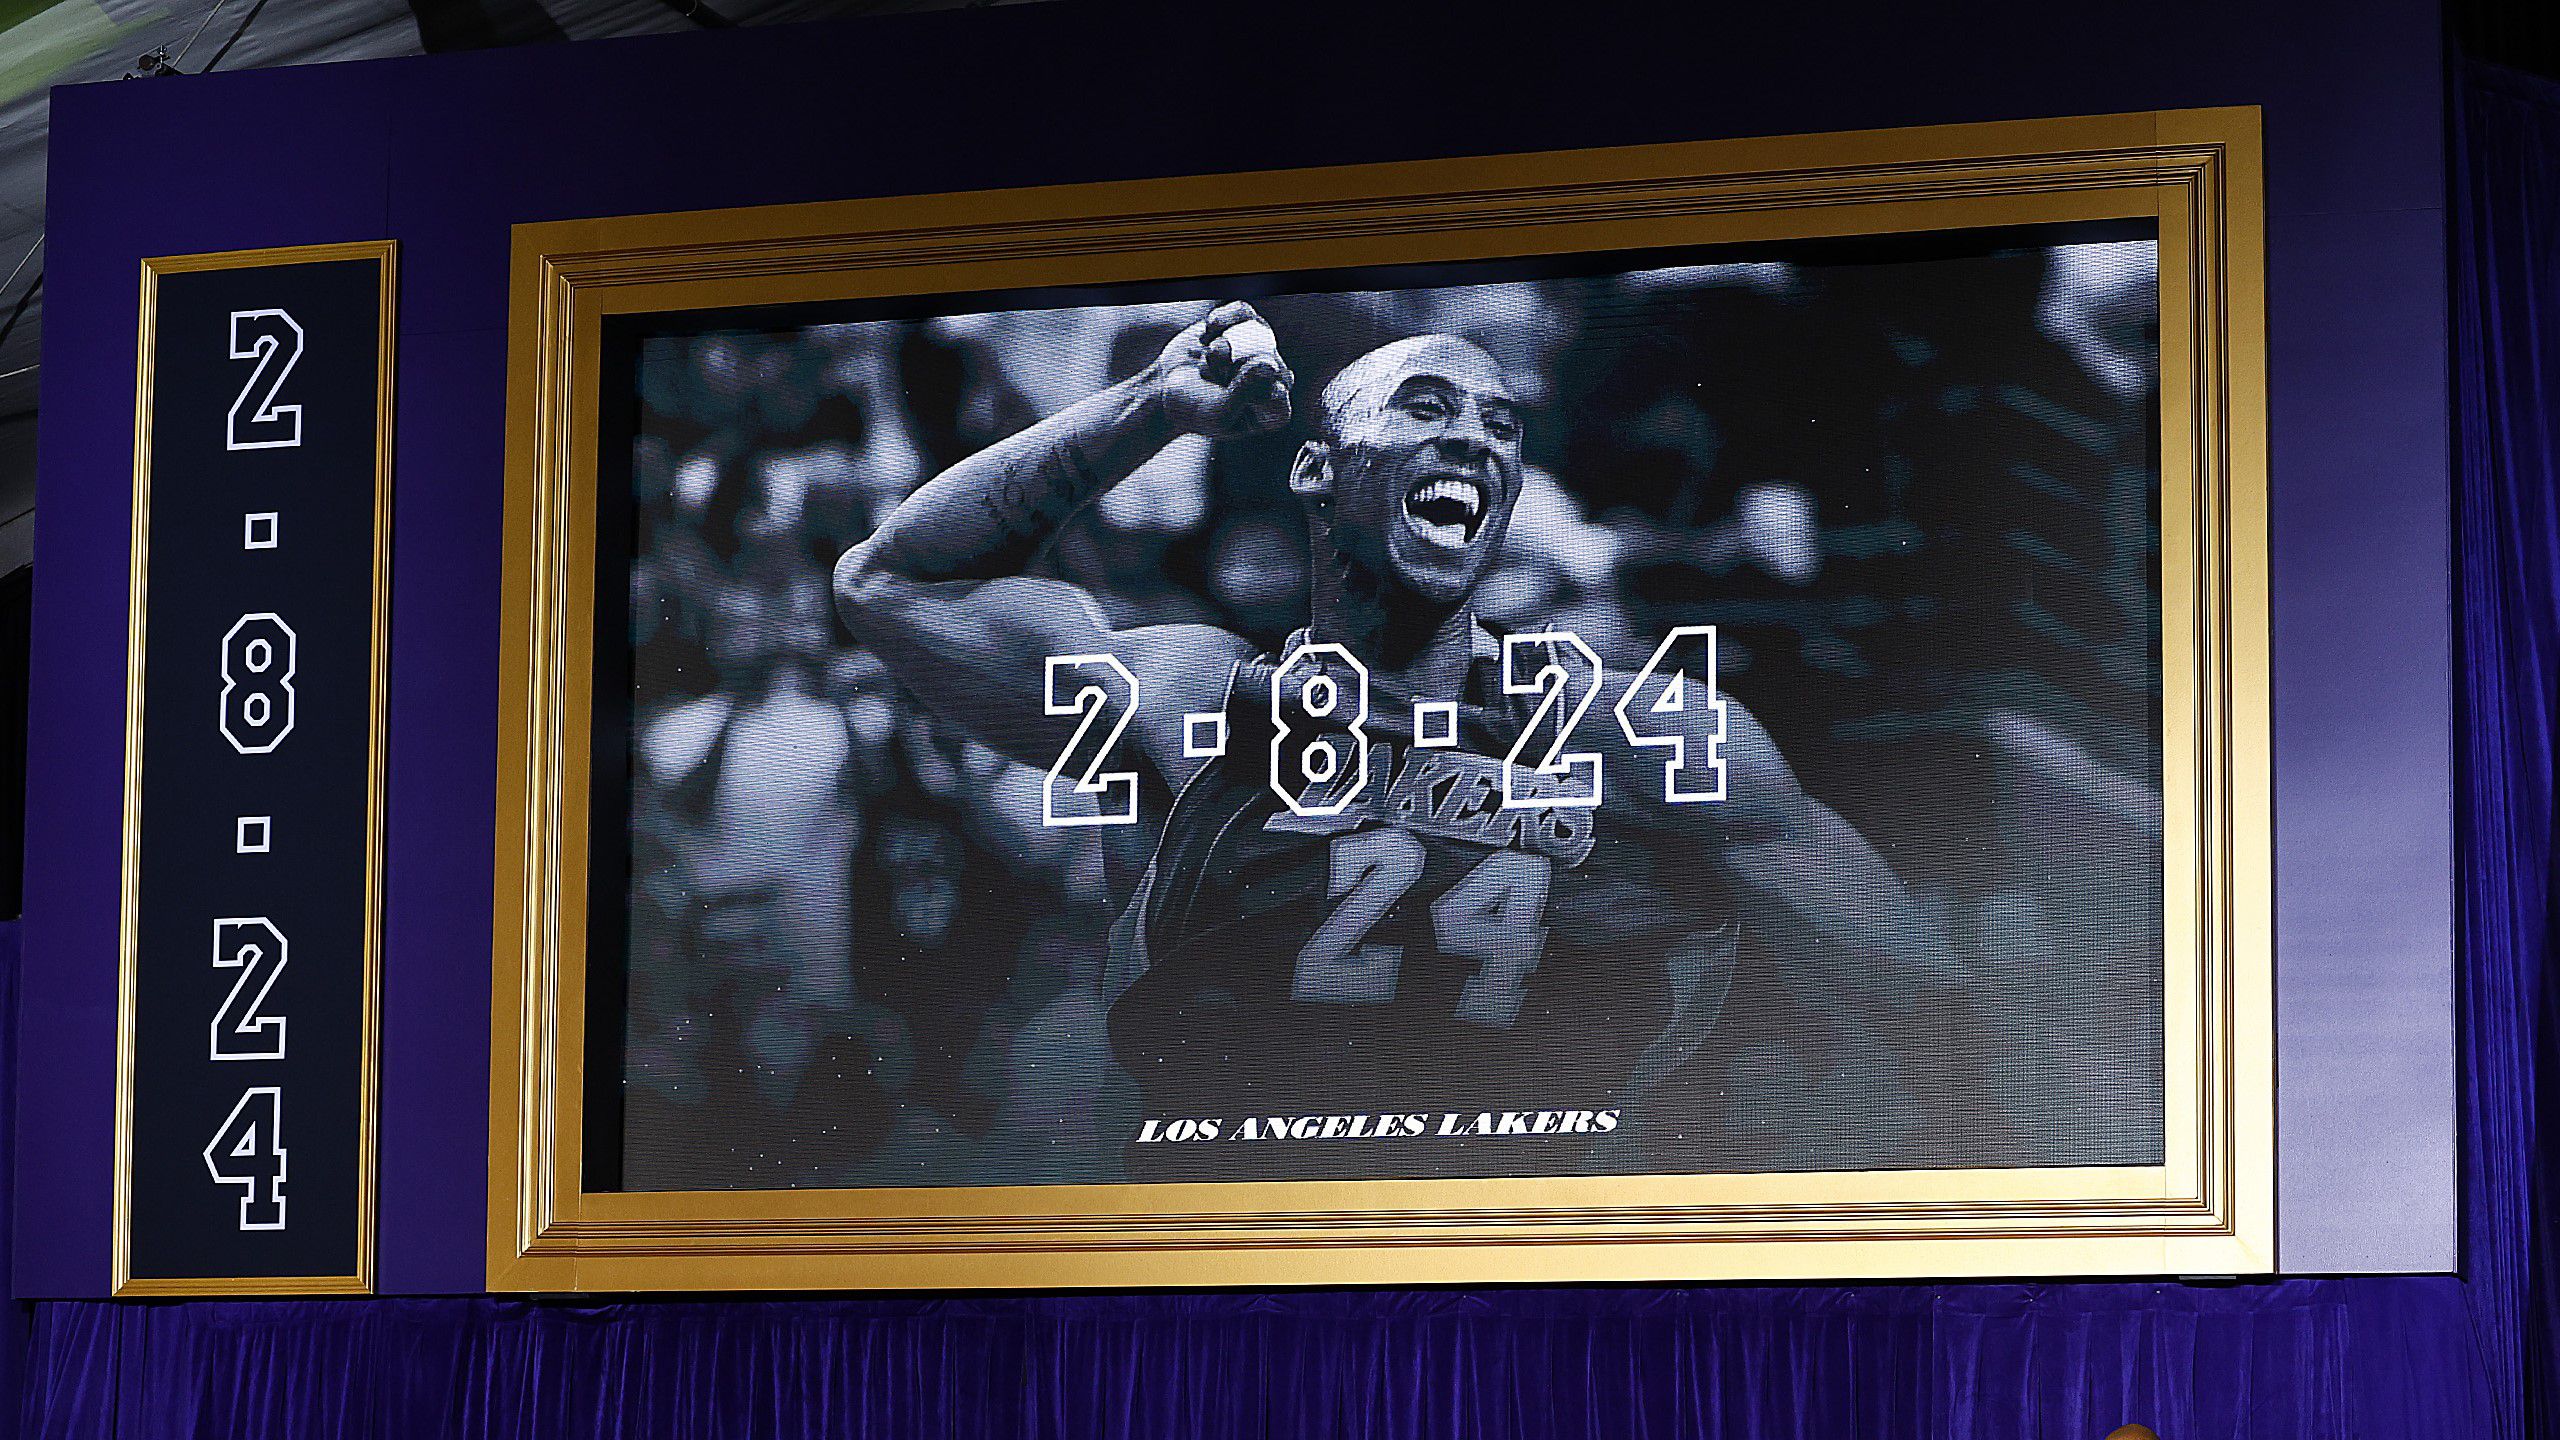 Leleplezte a legendás Kobe Bryant szobrát a Lakers – fotó